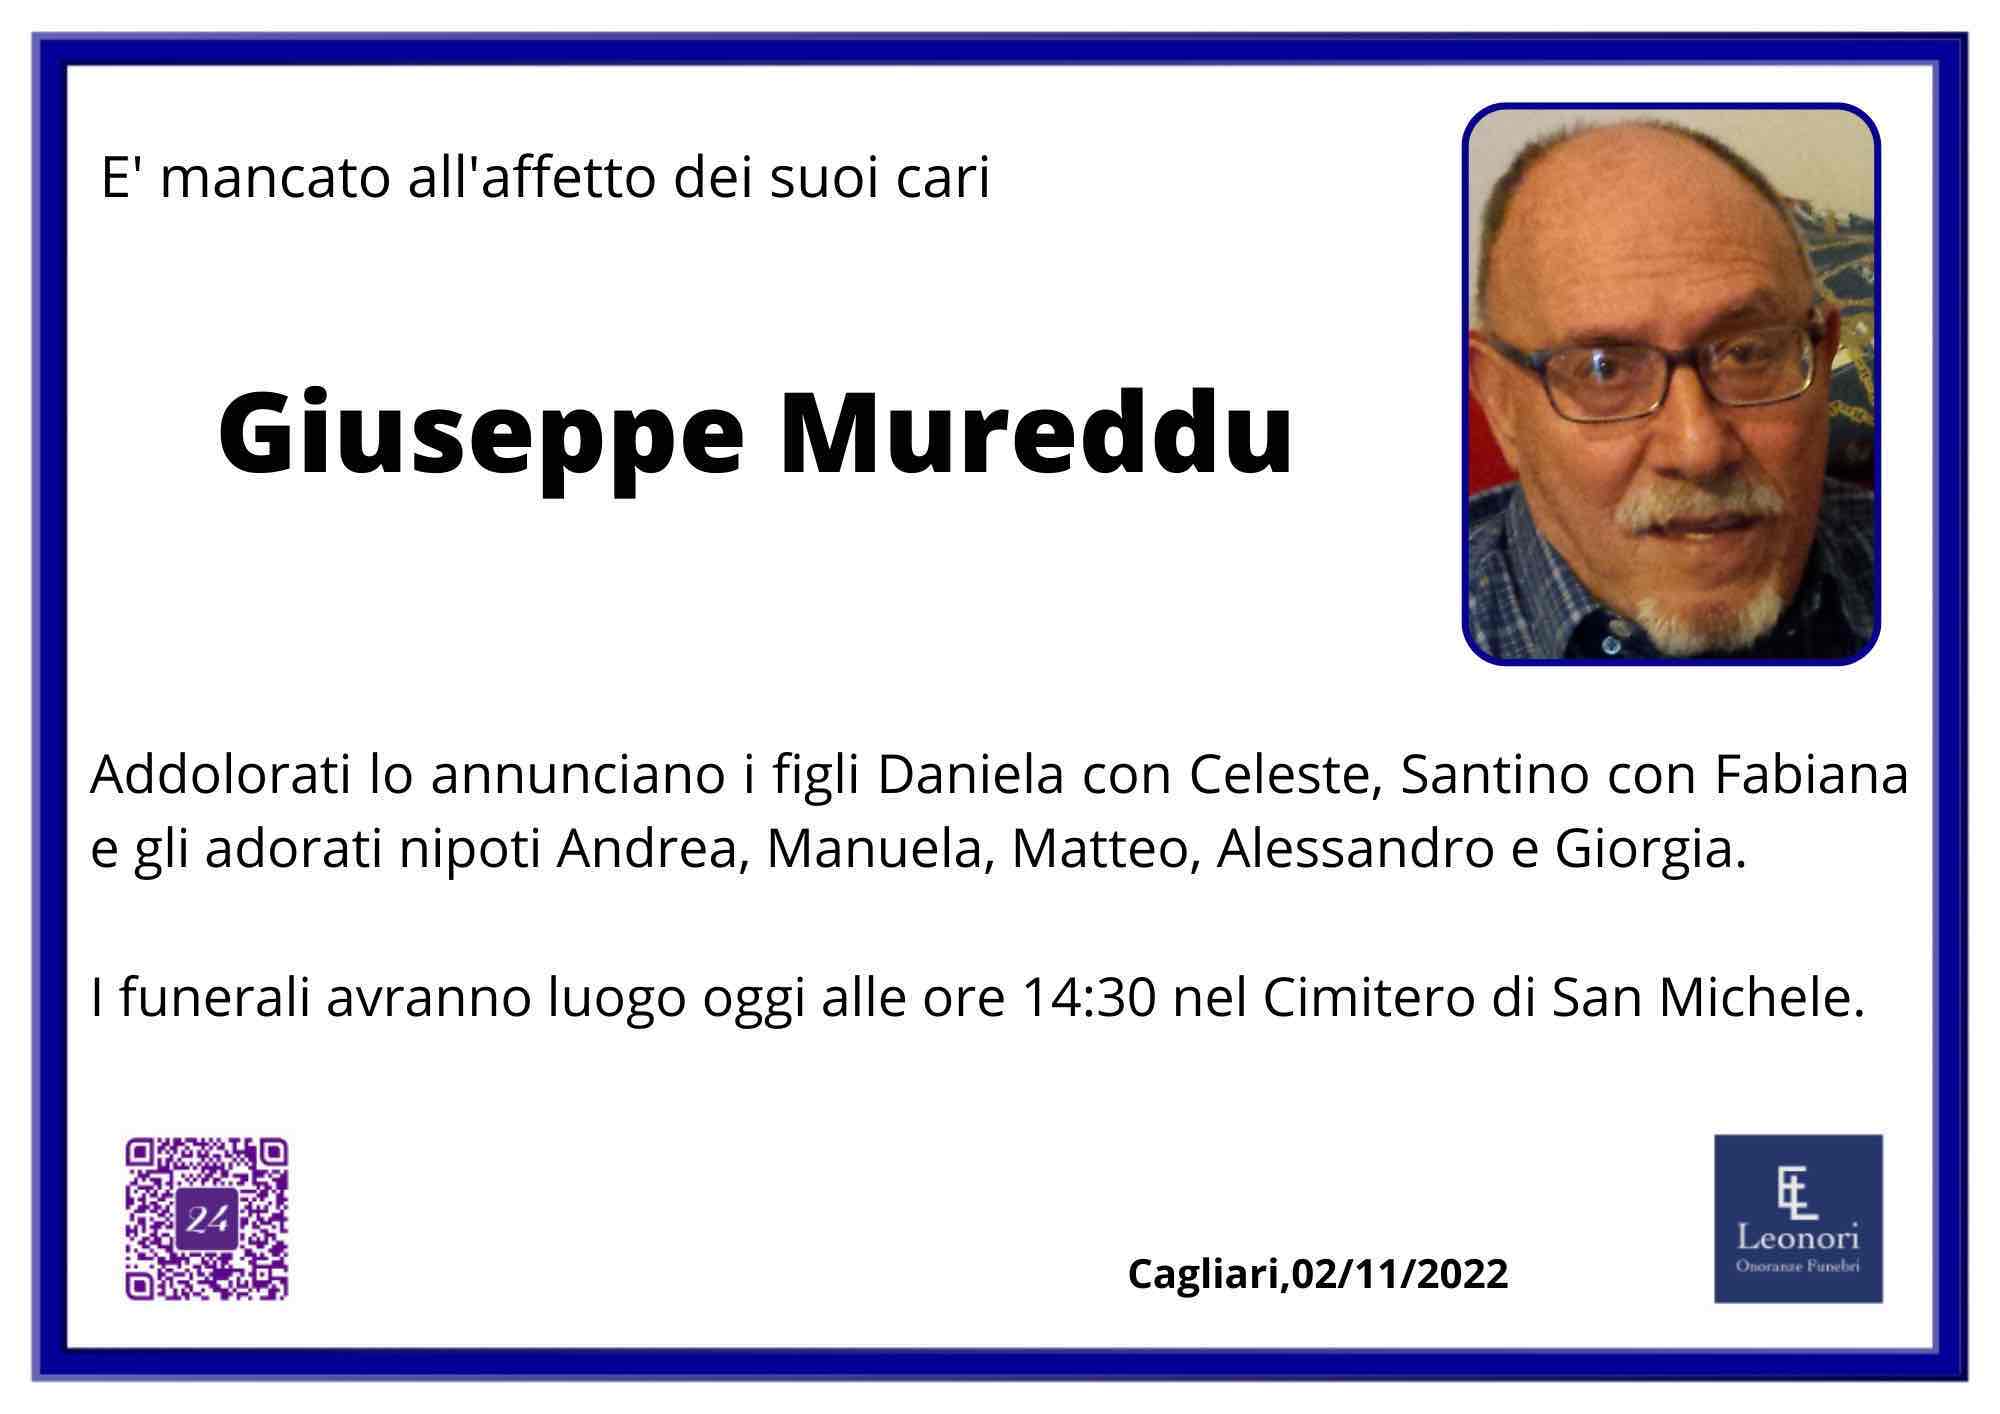 Giuseppe Mureddu